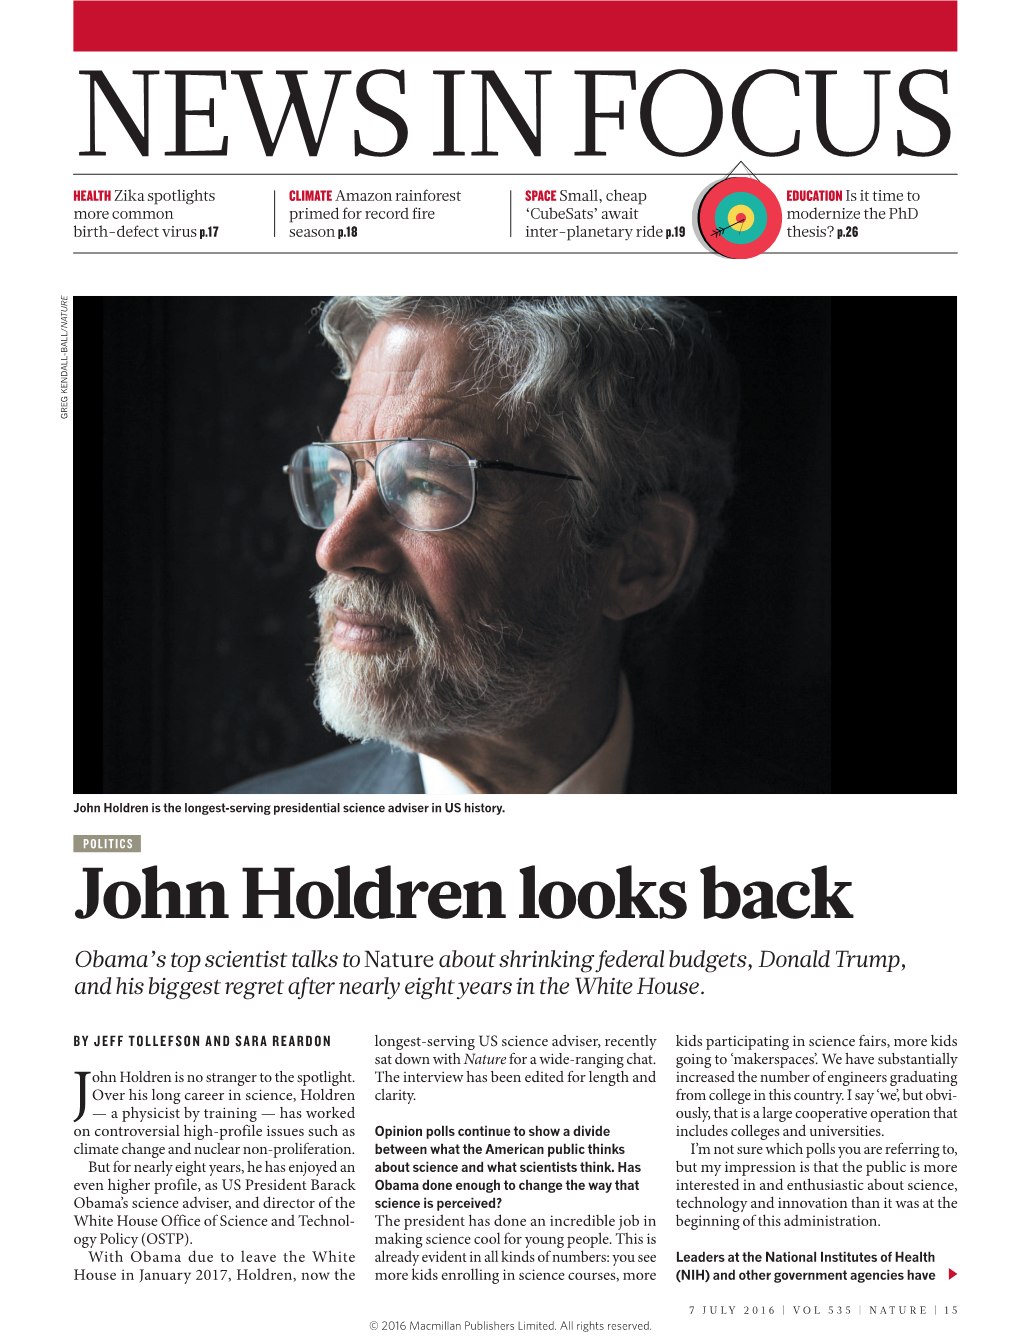 John Holdren Looks Back